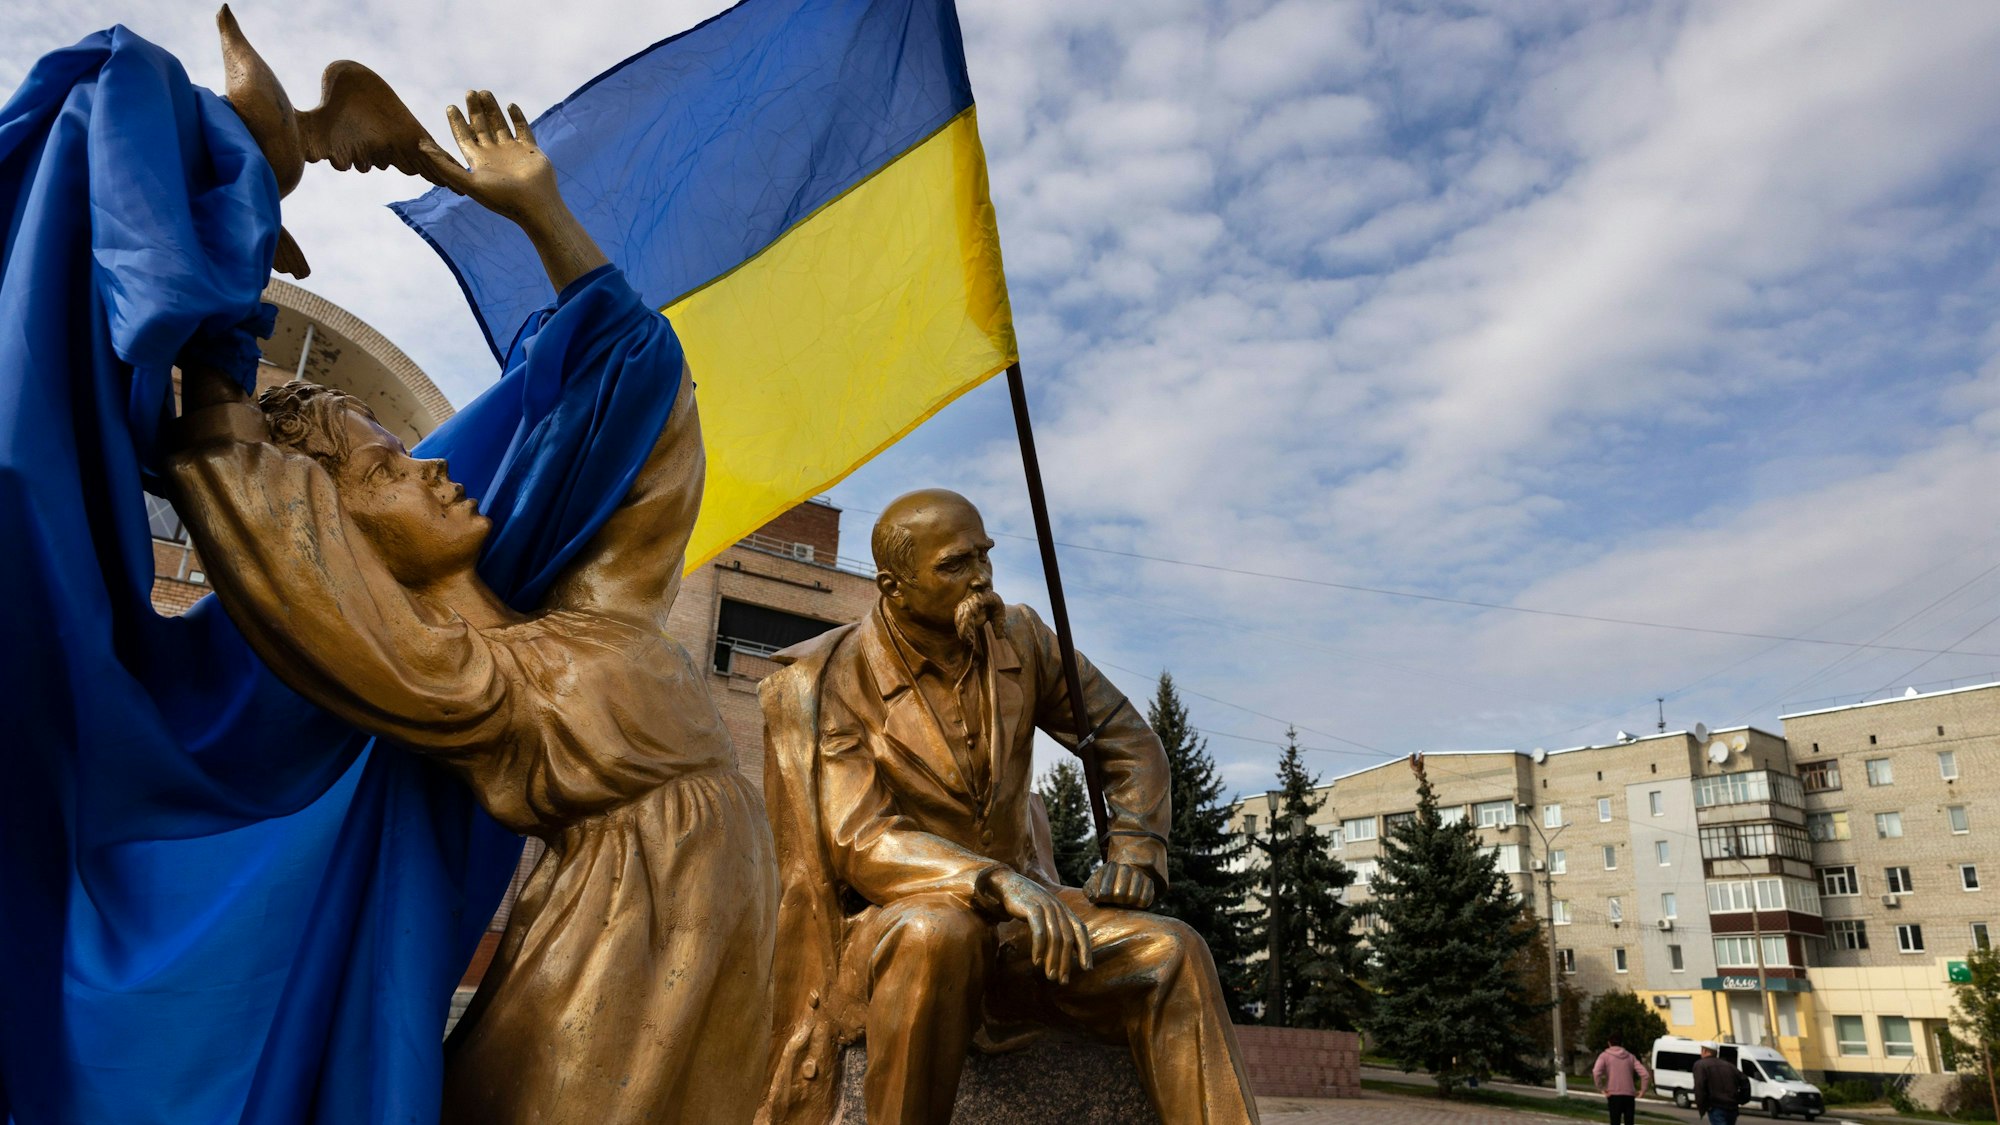 Ukrainische Flaggen wehen am 29. September 2022 auf dem Marktpkat in Balakiya, Ukraine.Getty Images